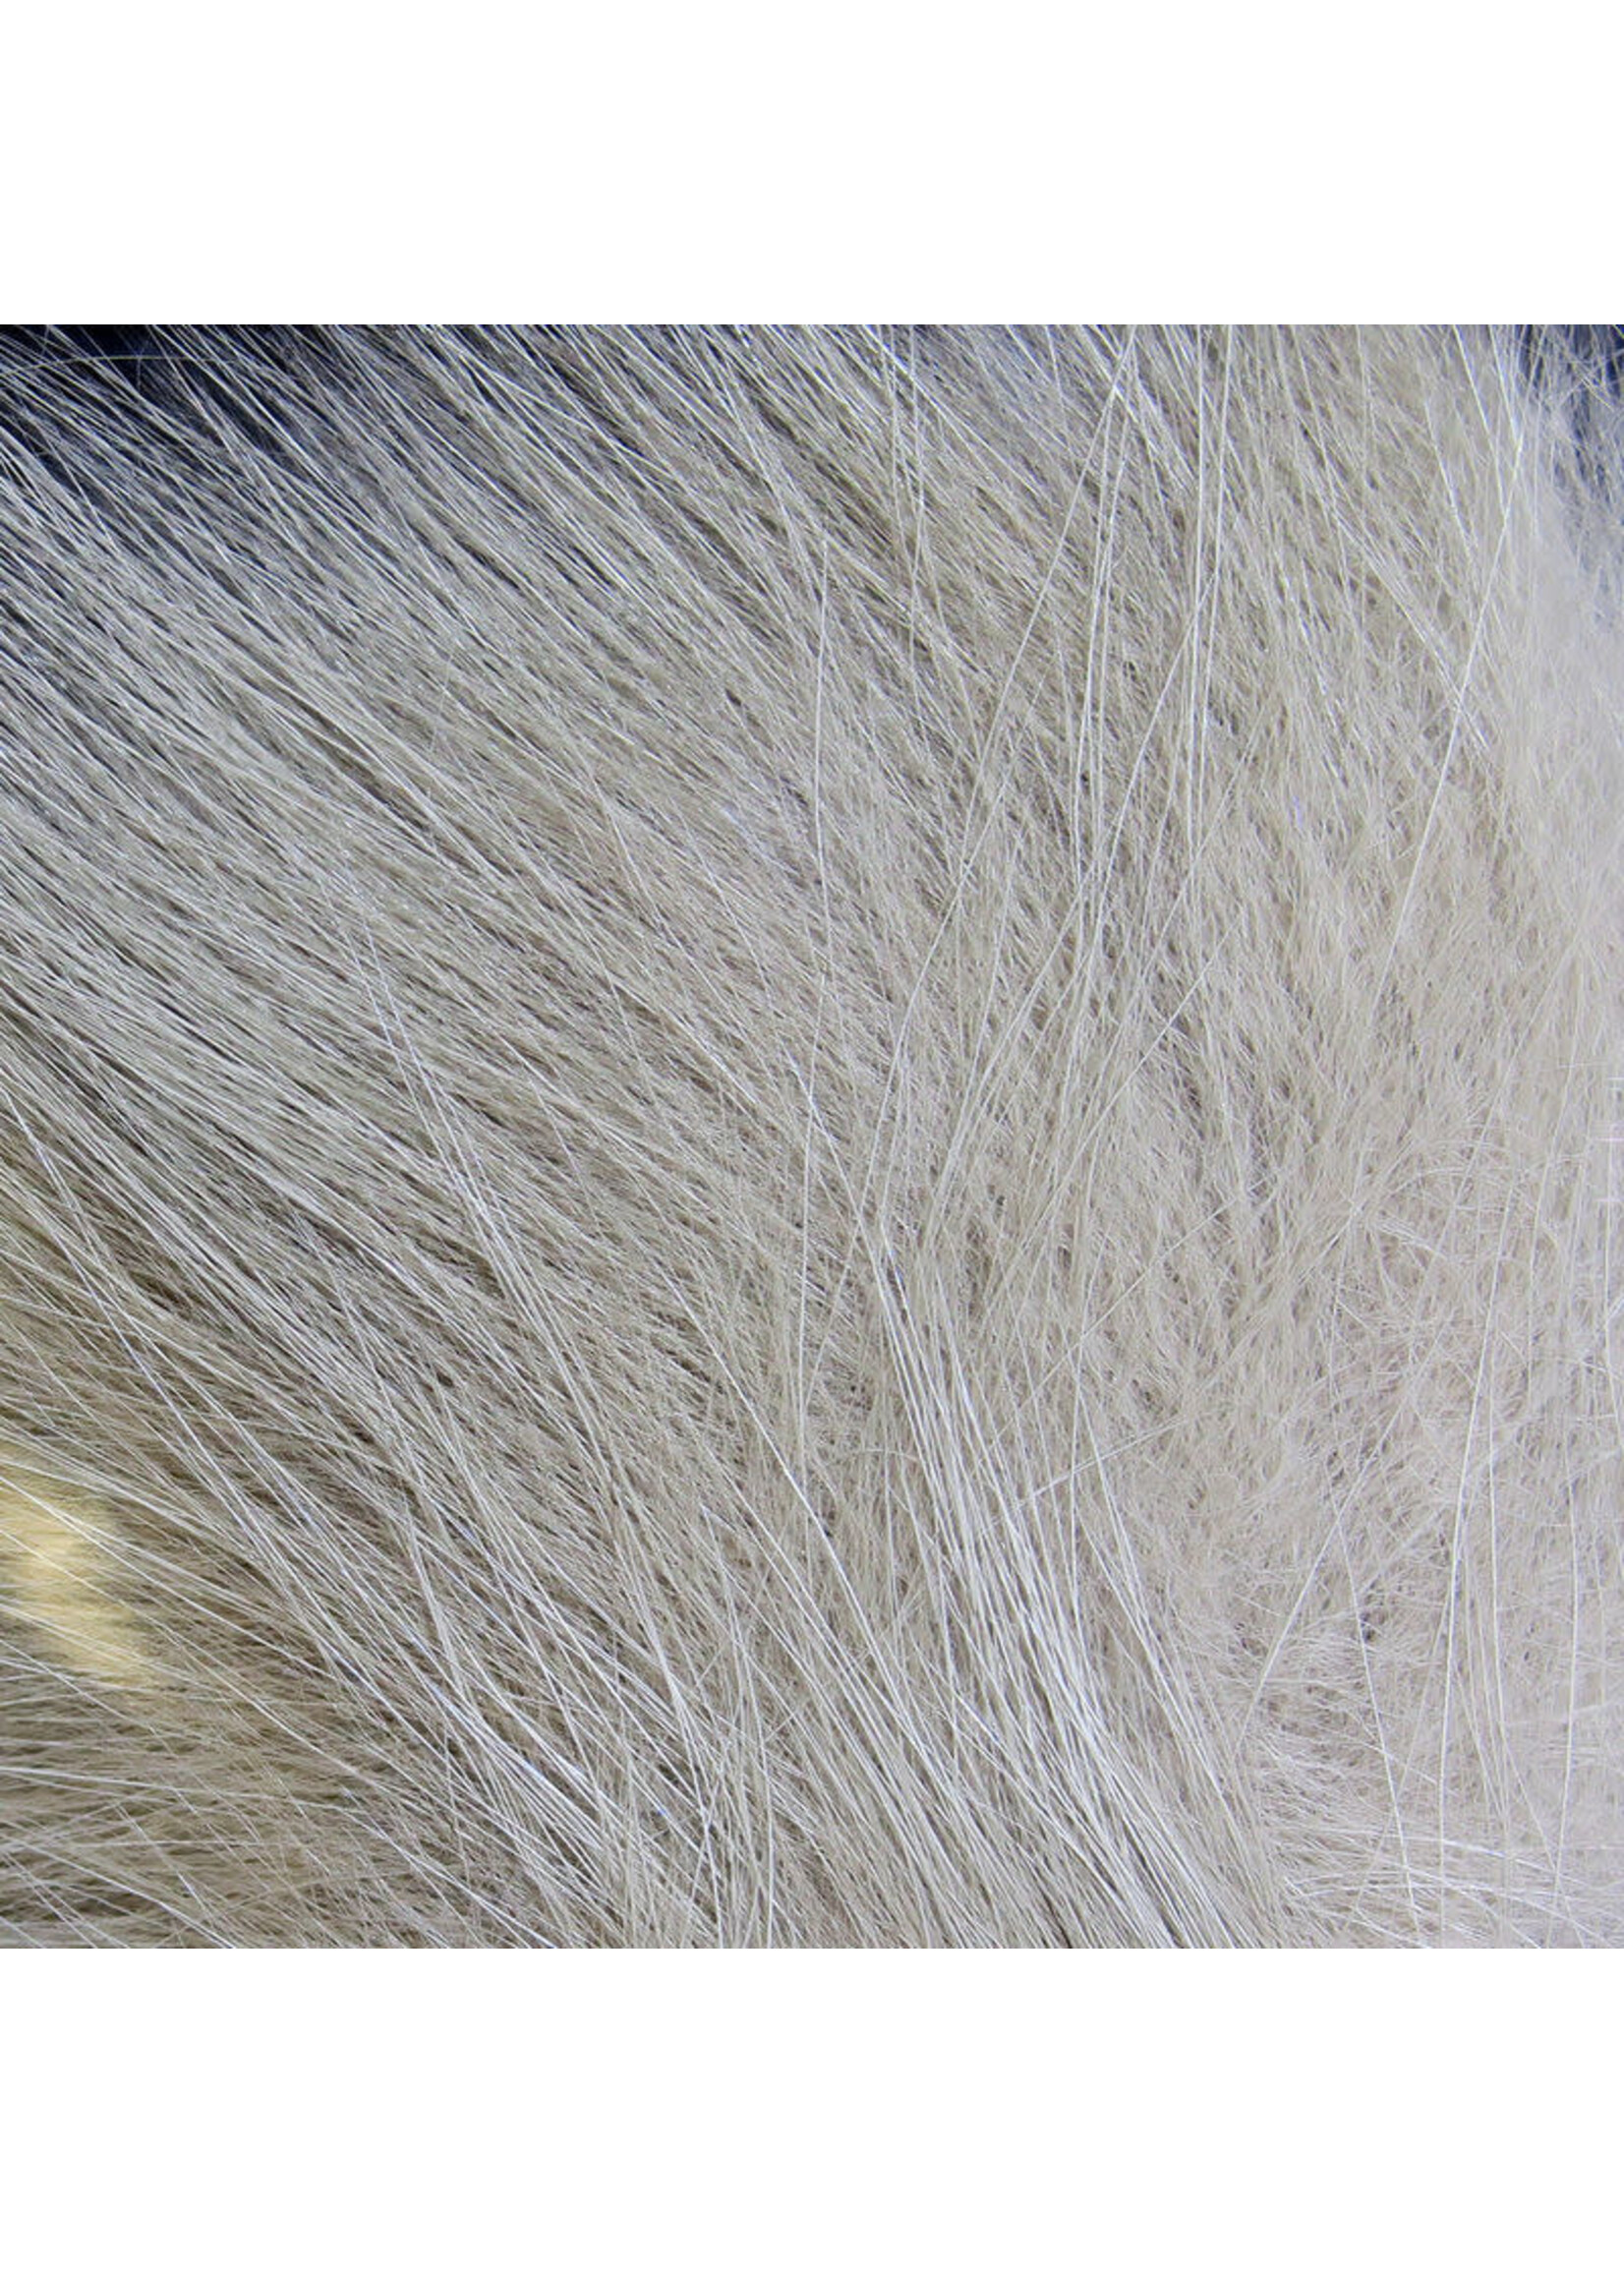 Hareline Dubbin Hareline Arctic Fox Hair